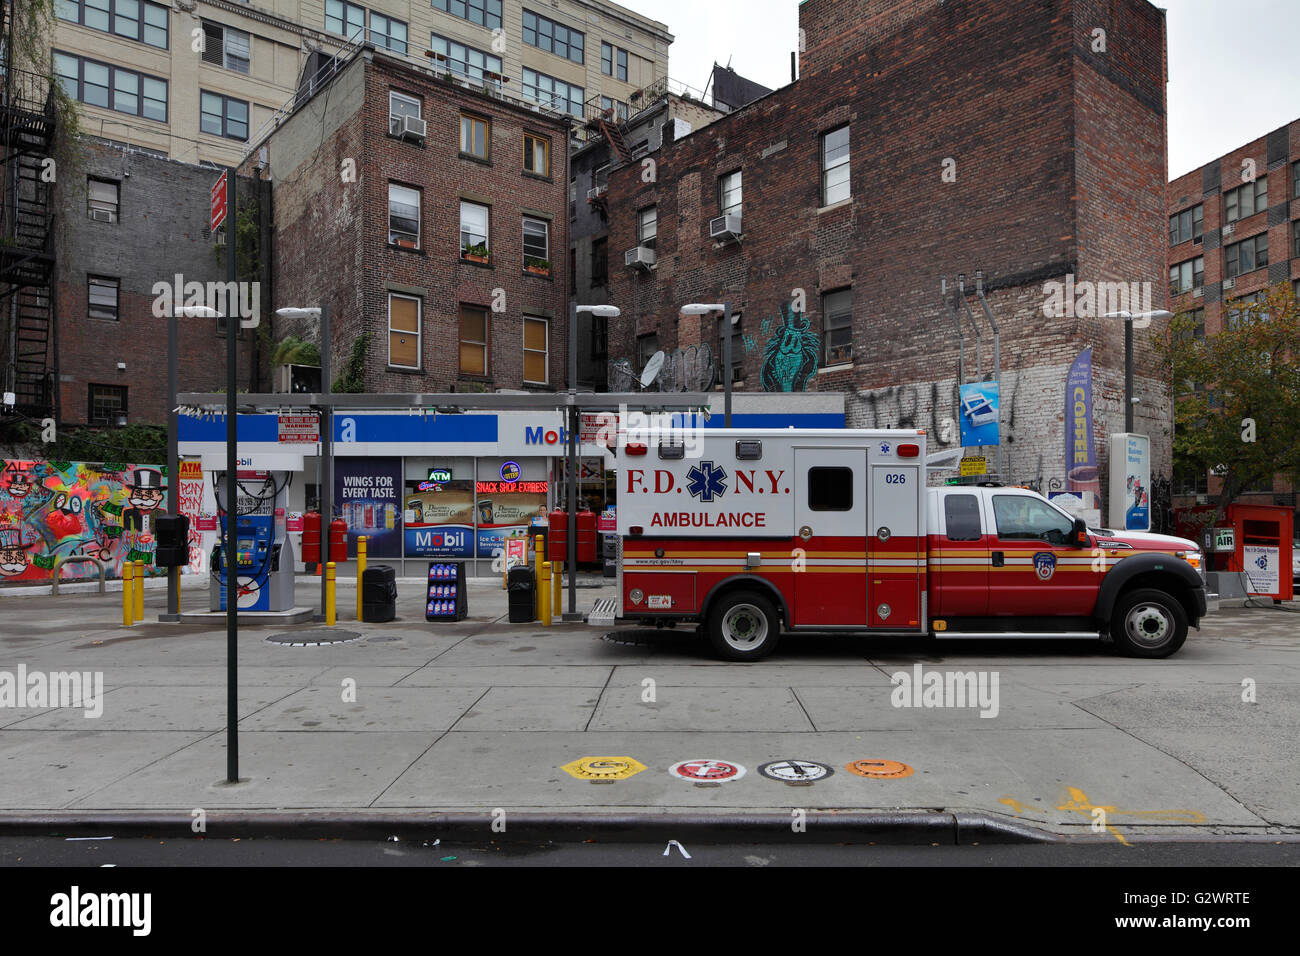 25.10.2015, New York New York, Stati Uniti d'America - stazione di gas e ambulanza F.D.N.Y. in Manhattan. 00P151025D190CAROEX.JPG - non per la vendita in G E R M A N Y, A U S T R I A, S W I T Z e R L A N D [modello di rilascio: non applicabile, la proprietà di rilascio: NO, (c) caro agenzia fotografica / Muhs, http://www.caro-images.com, info@carofoto.pl - Qualsiasi uso di questa immagine è soggetto a royalty!] Foto Stock